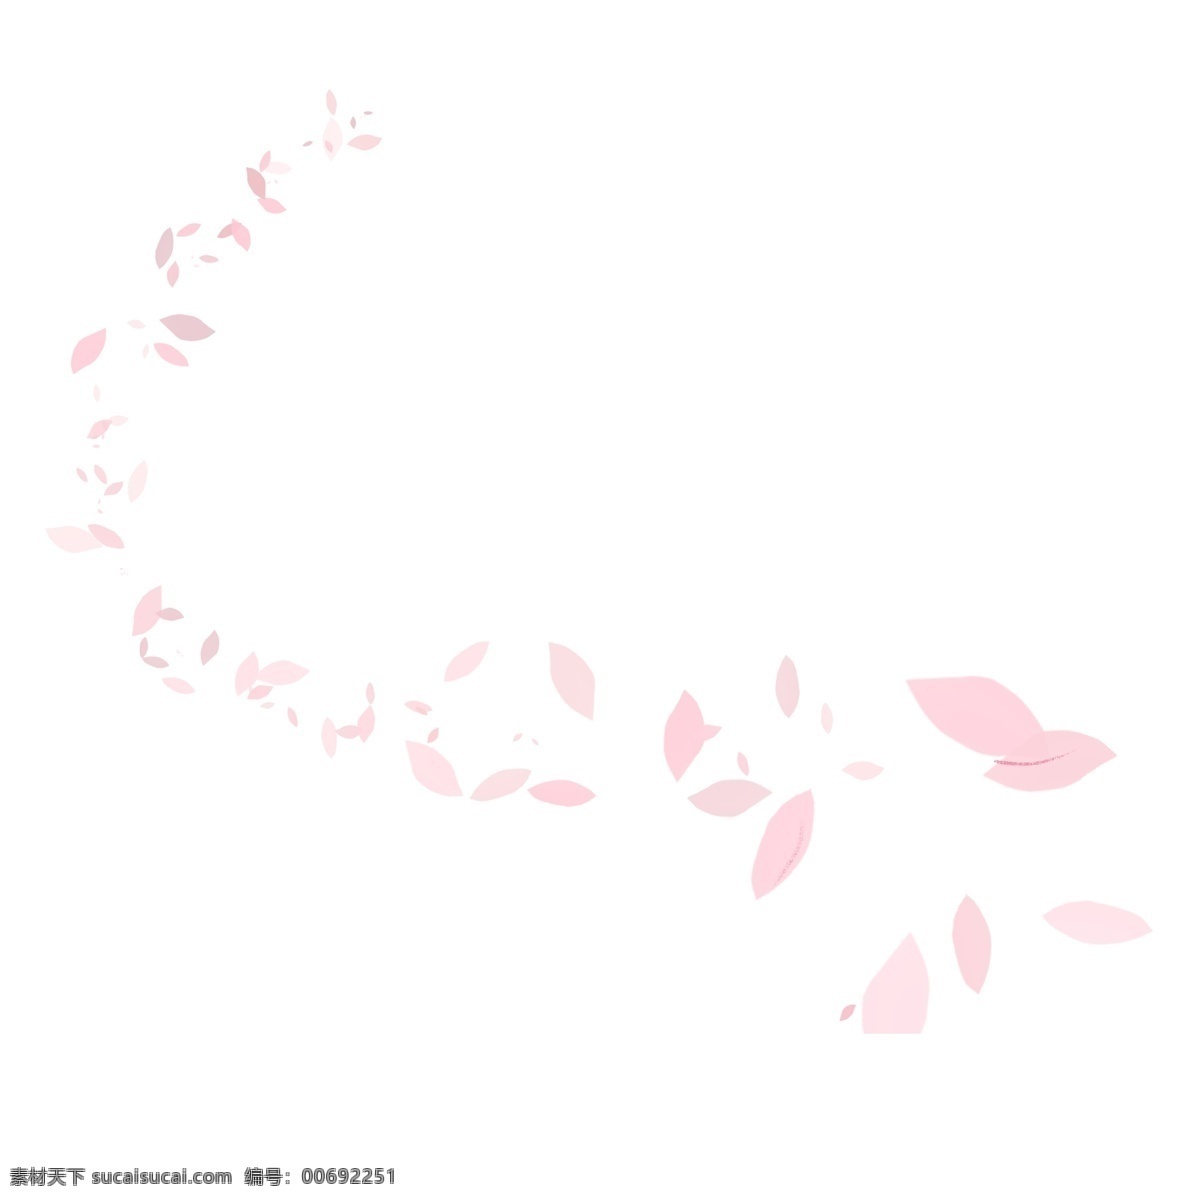 卡通 粉色 花瓣 漂浮的花瓣 飞舞的花瓣 粉色花瓣 卡通插图 创意卡通下载 插图 png图下载 卡通装饰